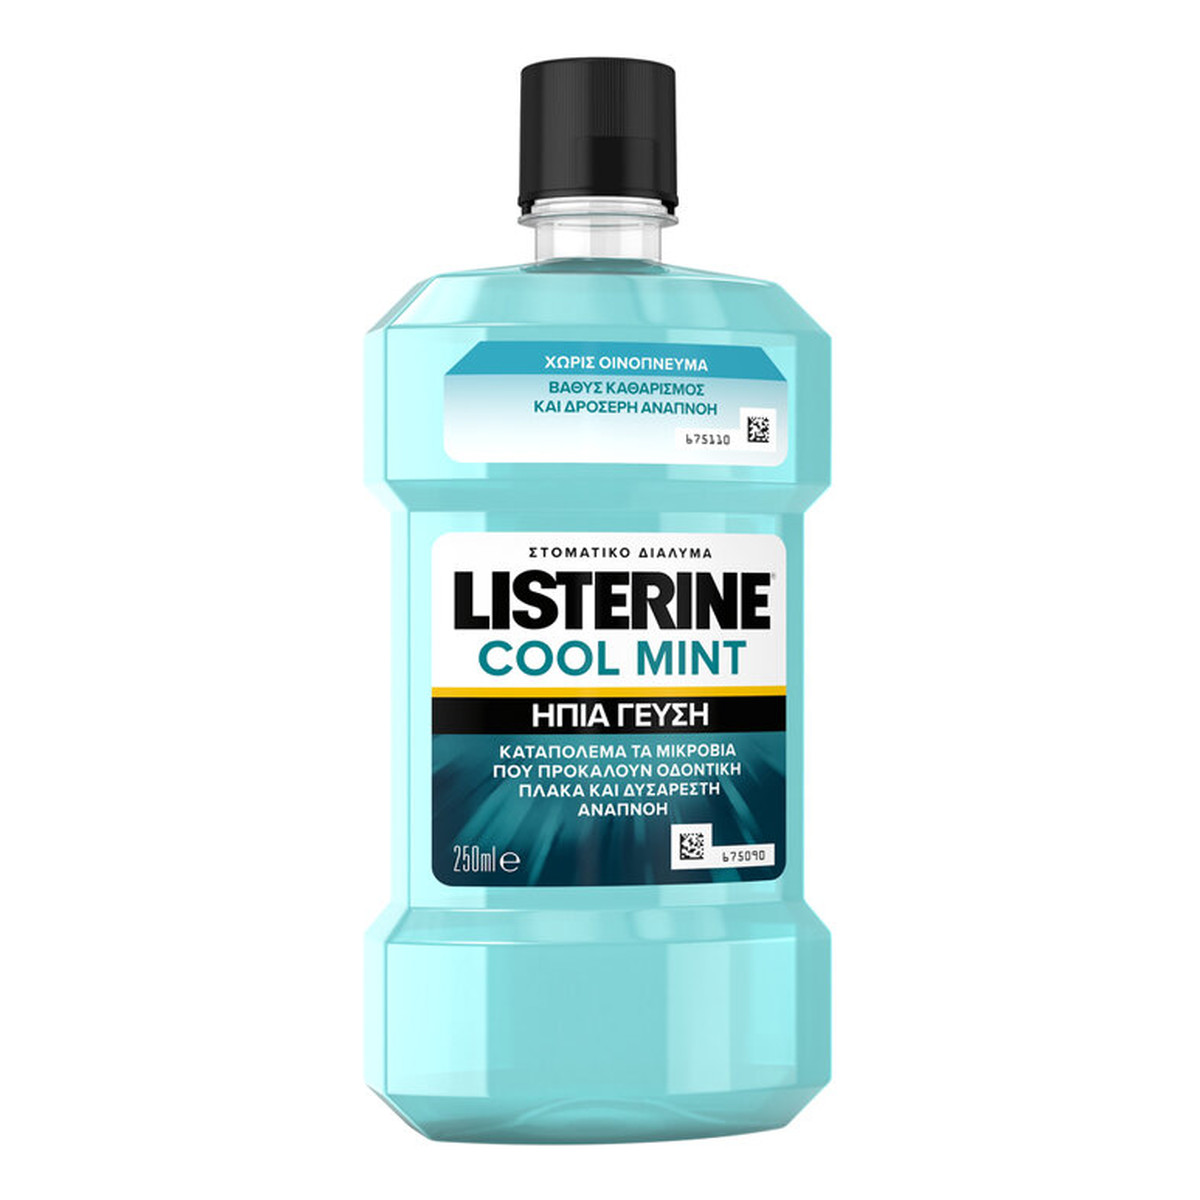 Listerine Cool mint płyn do płukania jamy ustnej 250ml